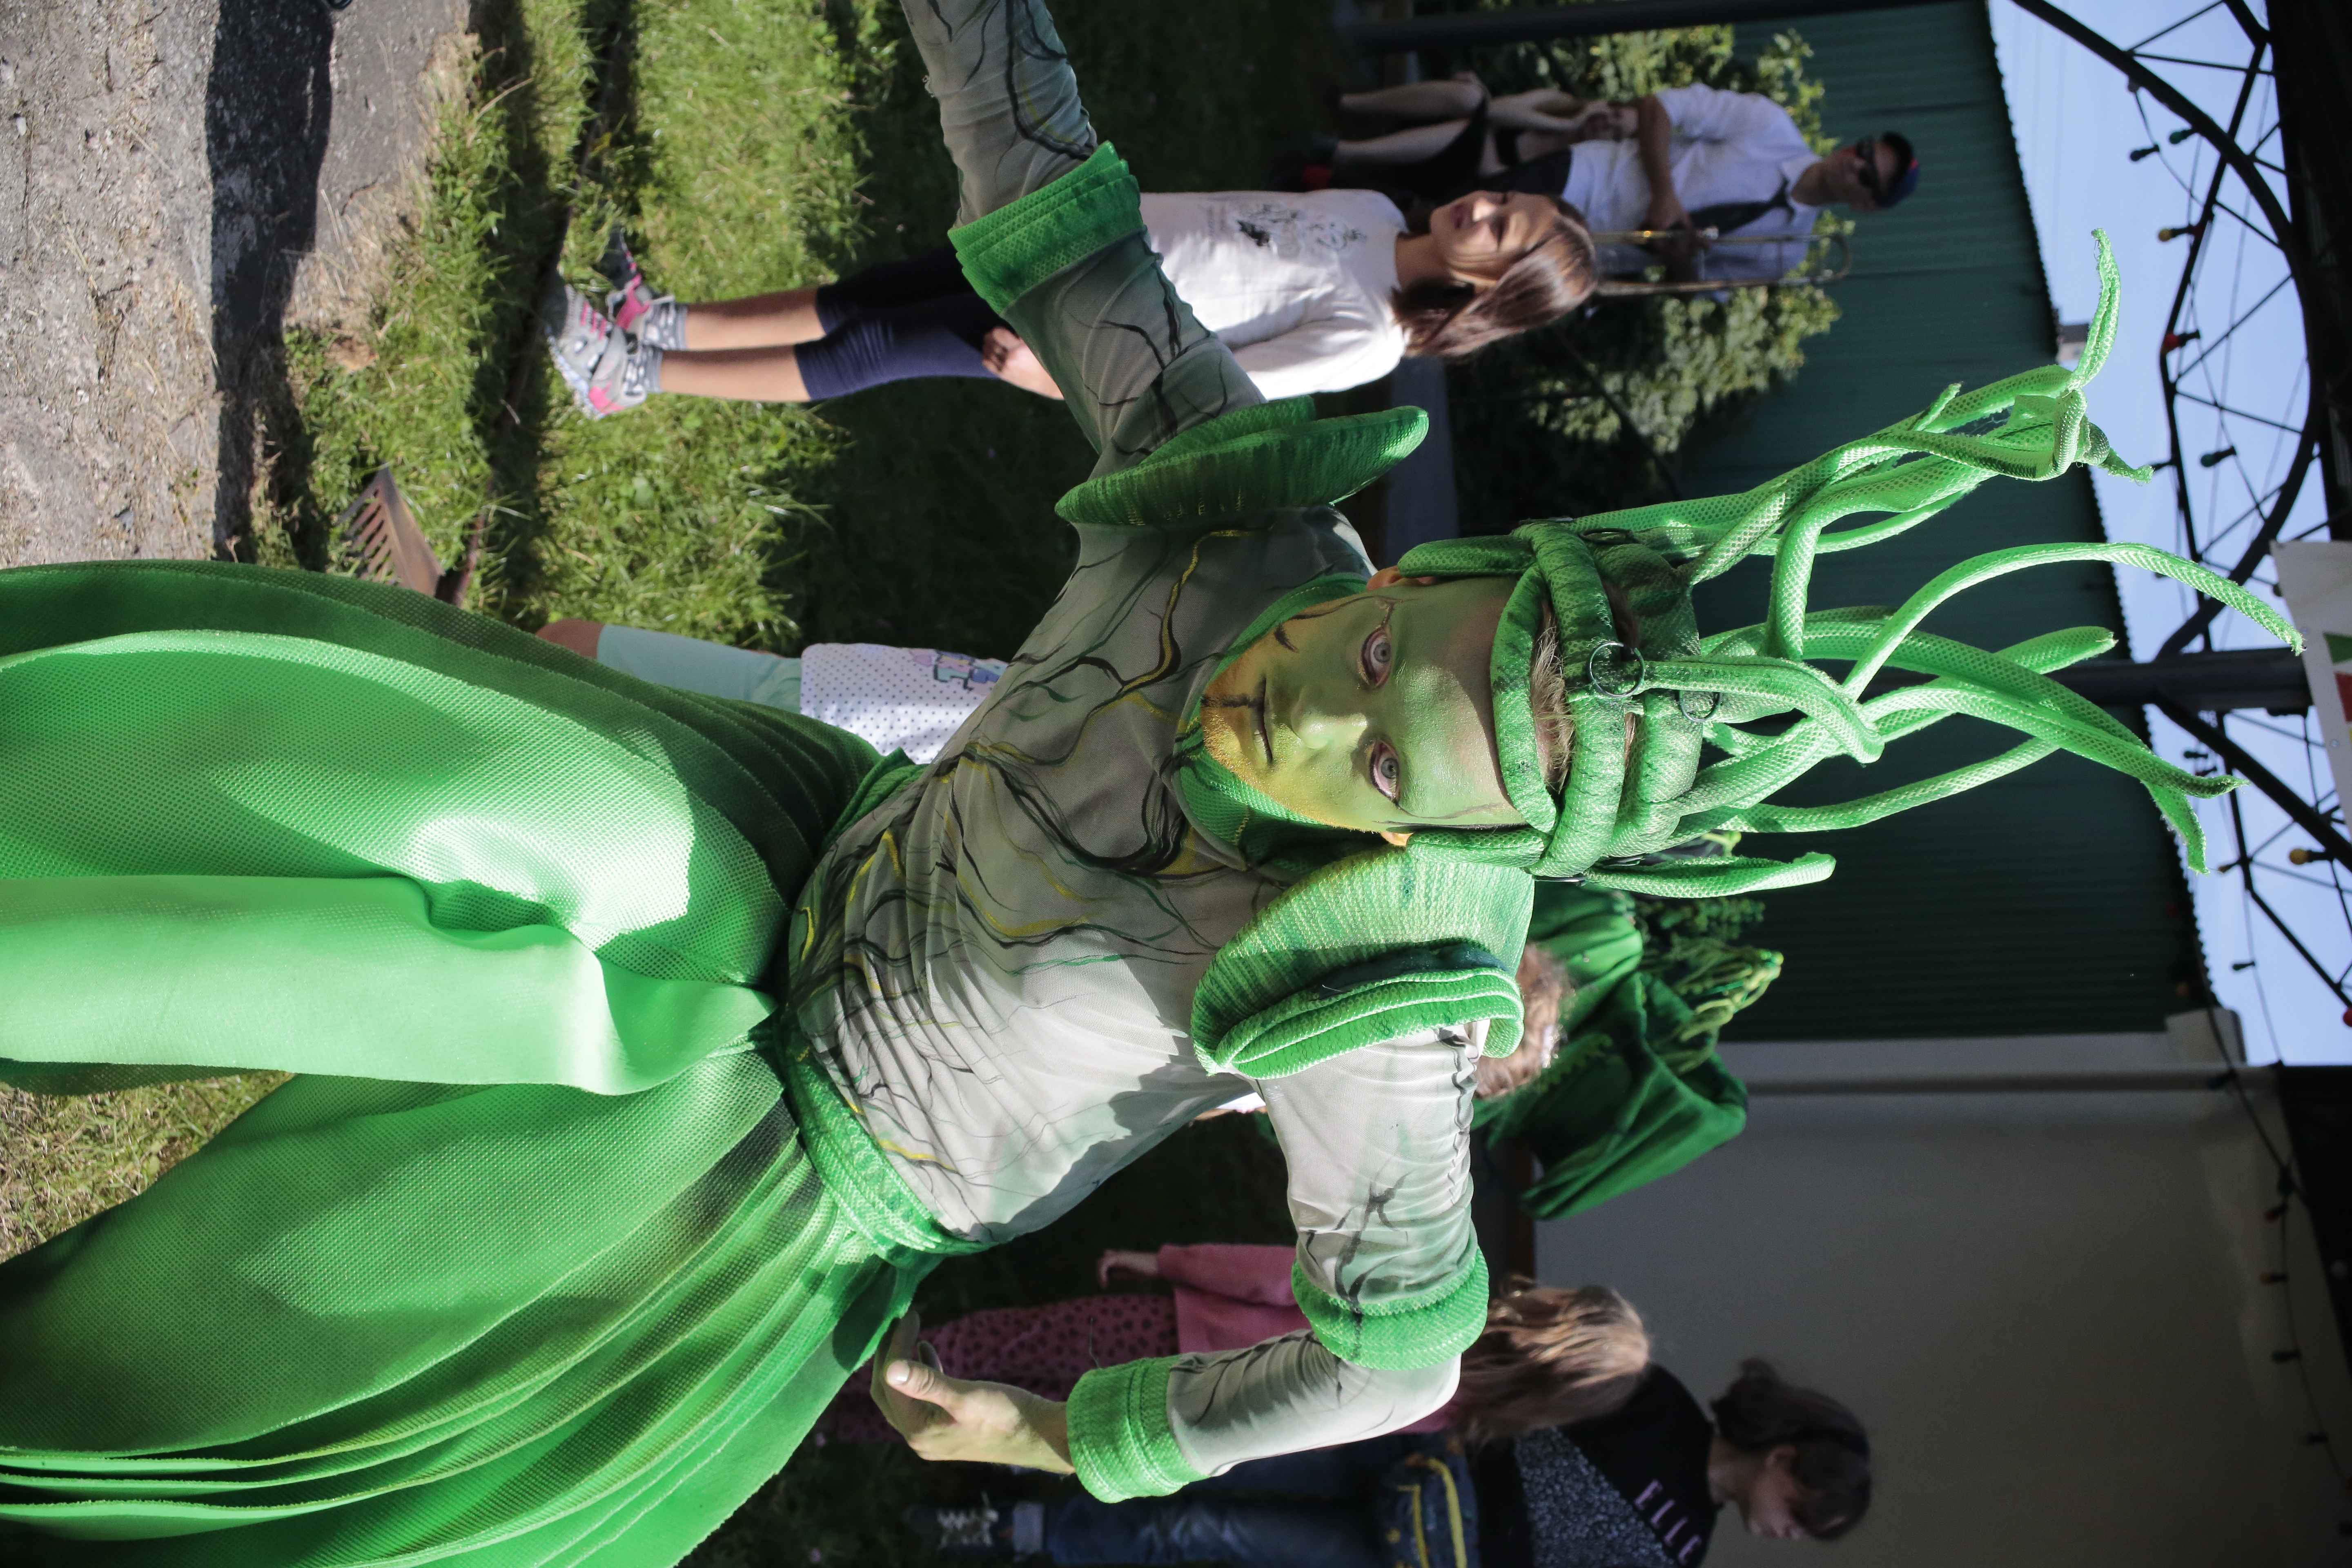 Przed sceną w tanecznej pozie stoi aktor z pomalowaną na zielono twarzą, z nakryciem głowy z wysoko sterczącymi zielonymi łodygami. W tle widać dzieci oglądające taniec innych roślin.